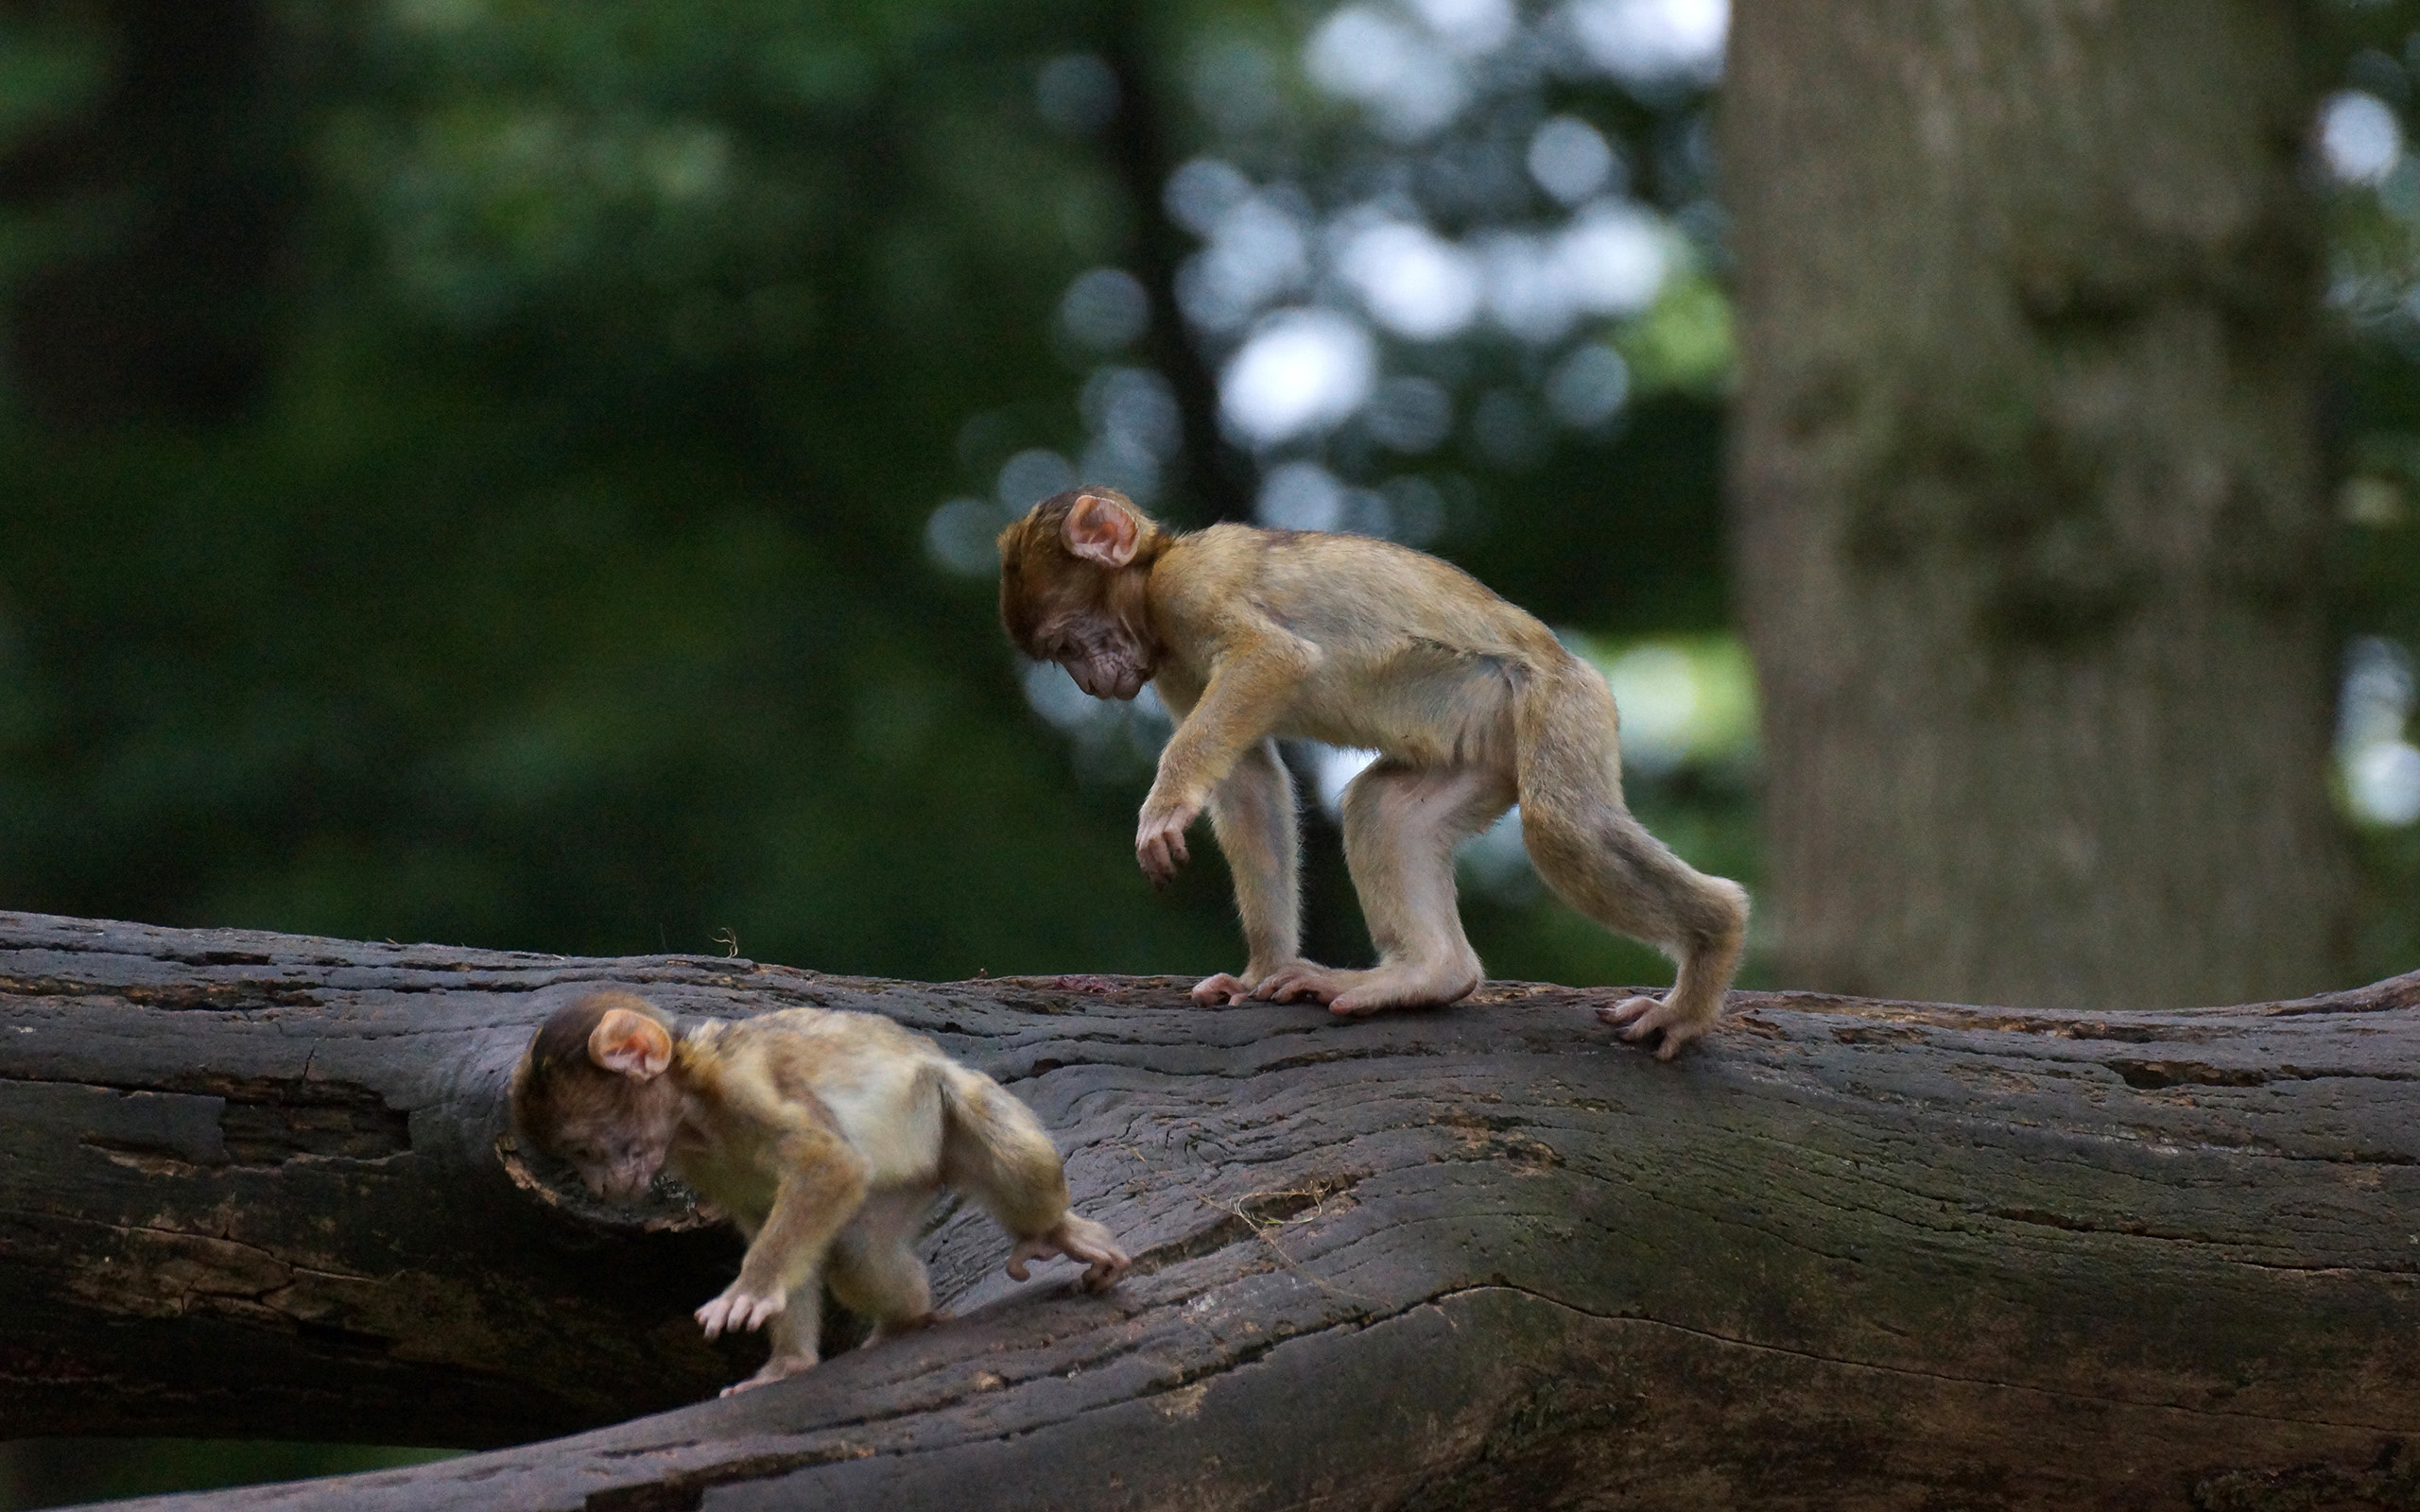 fond d'écran mignon de singe,macaque,macaque rhésus,primate,faune,faon